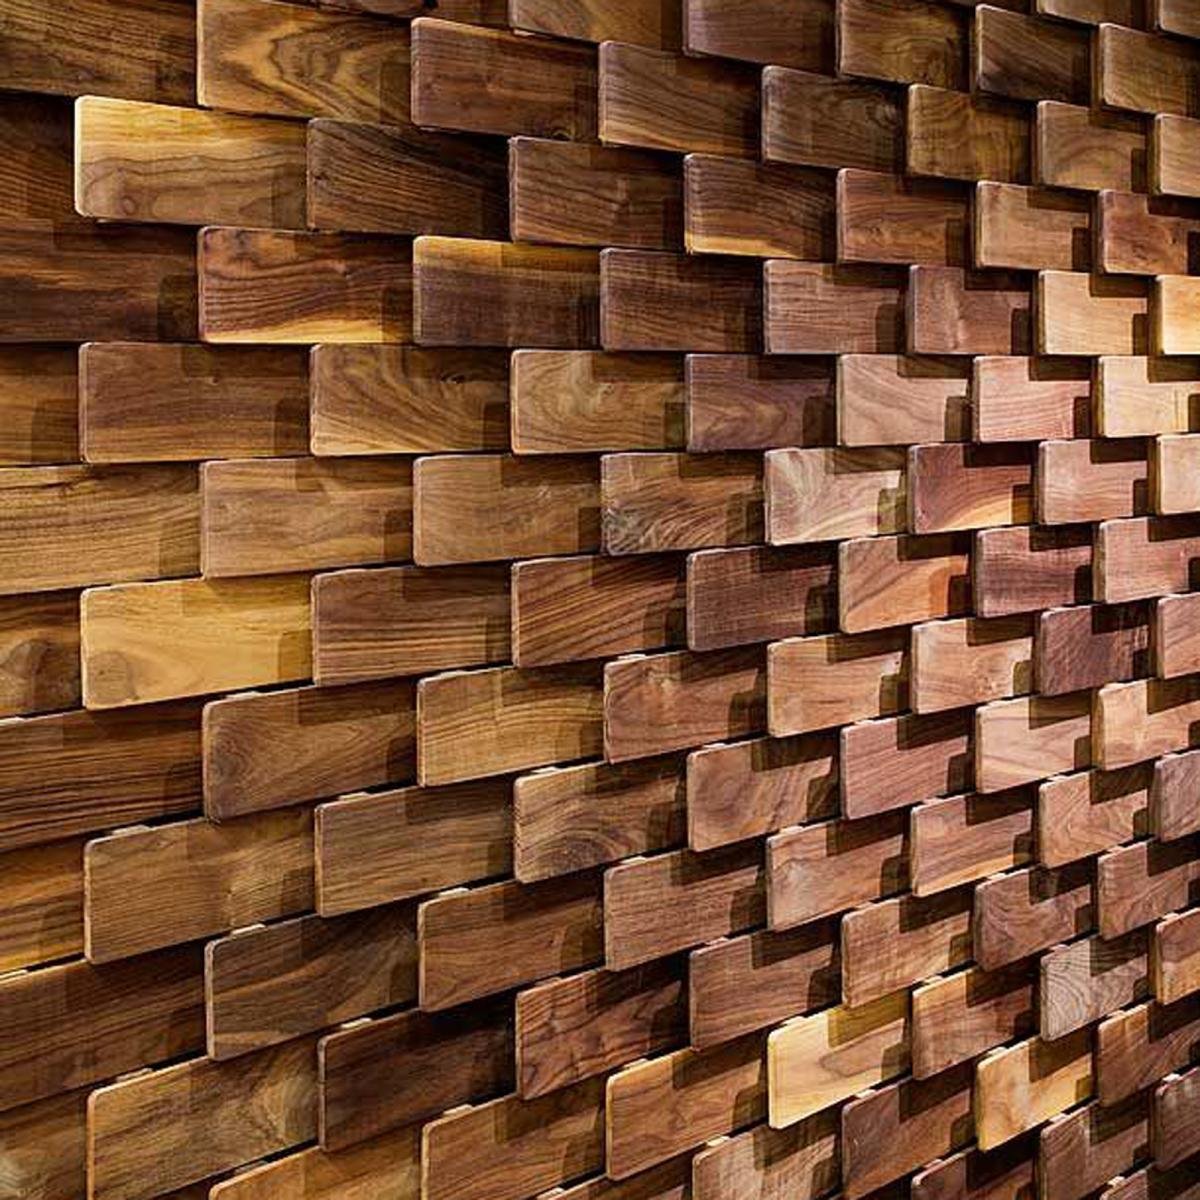 Wooden patterns. Стеновые панели из дерева. Панно из деревянных брусков. Декоративные панели из дерева. Деревянные стеновые панели 3d.